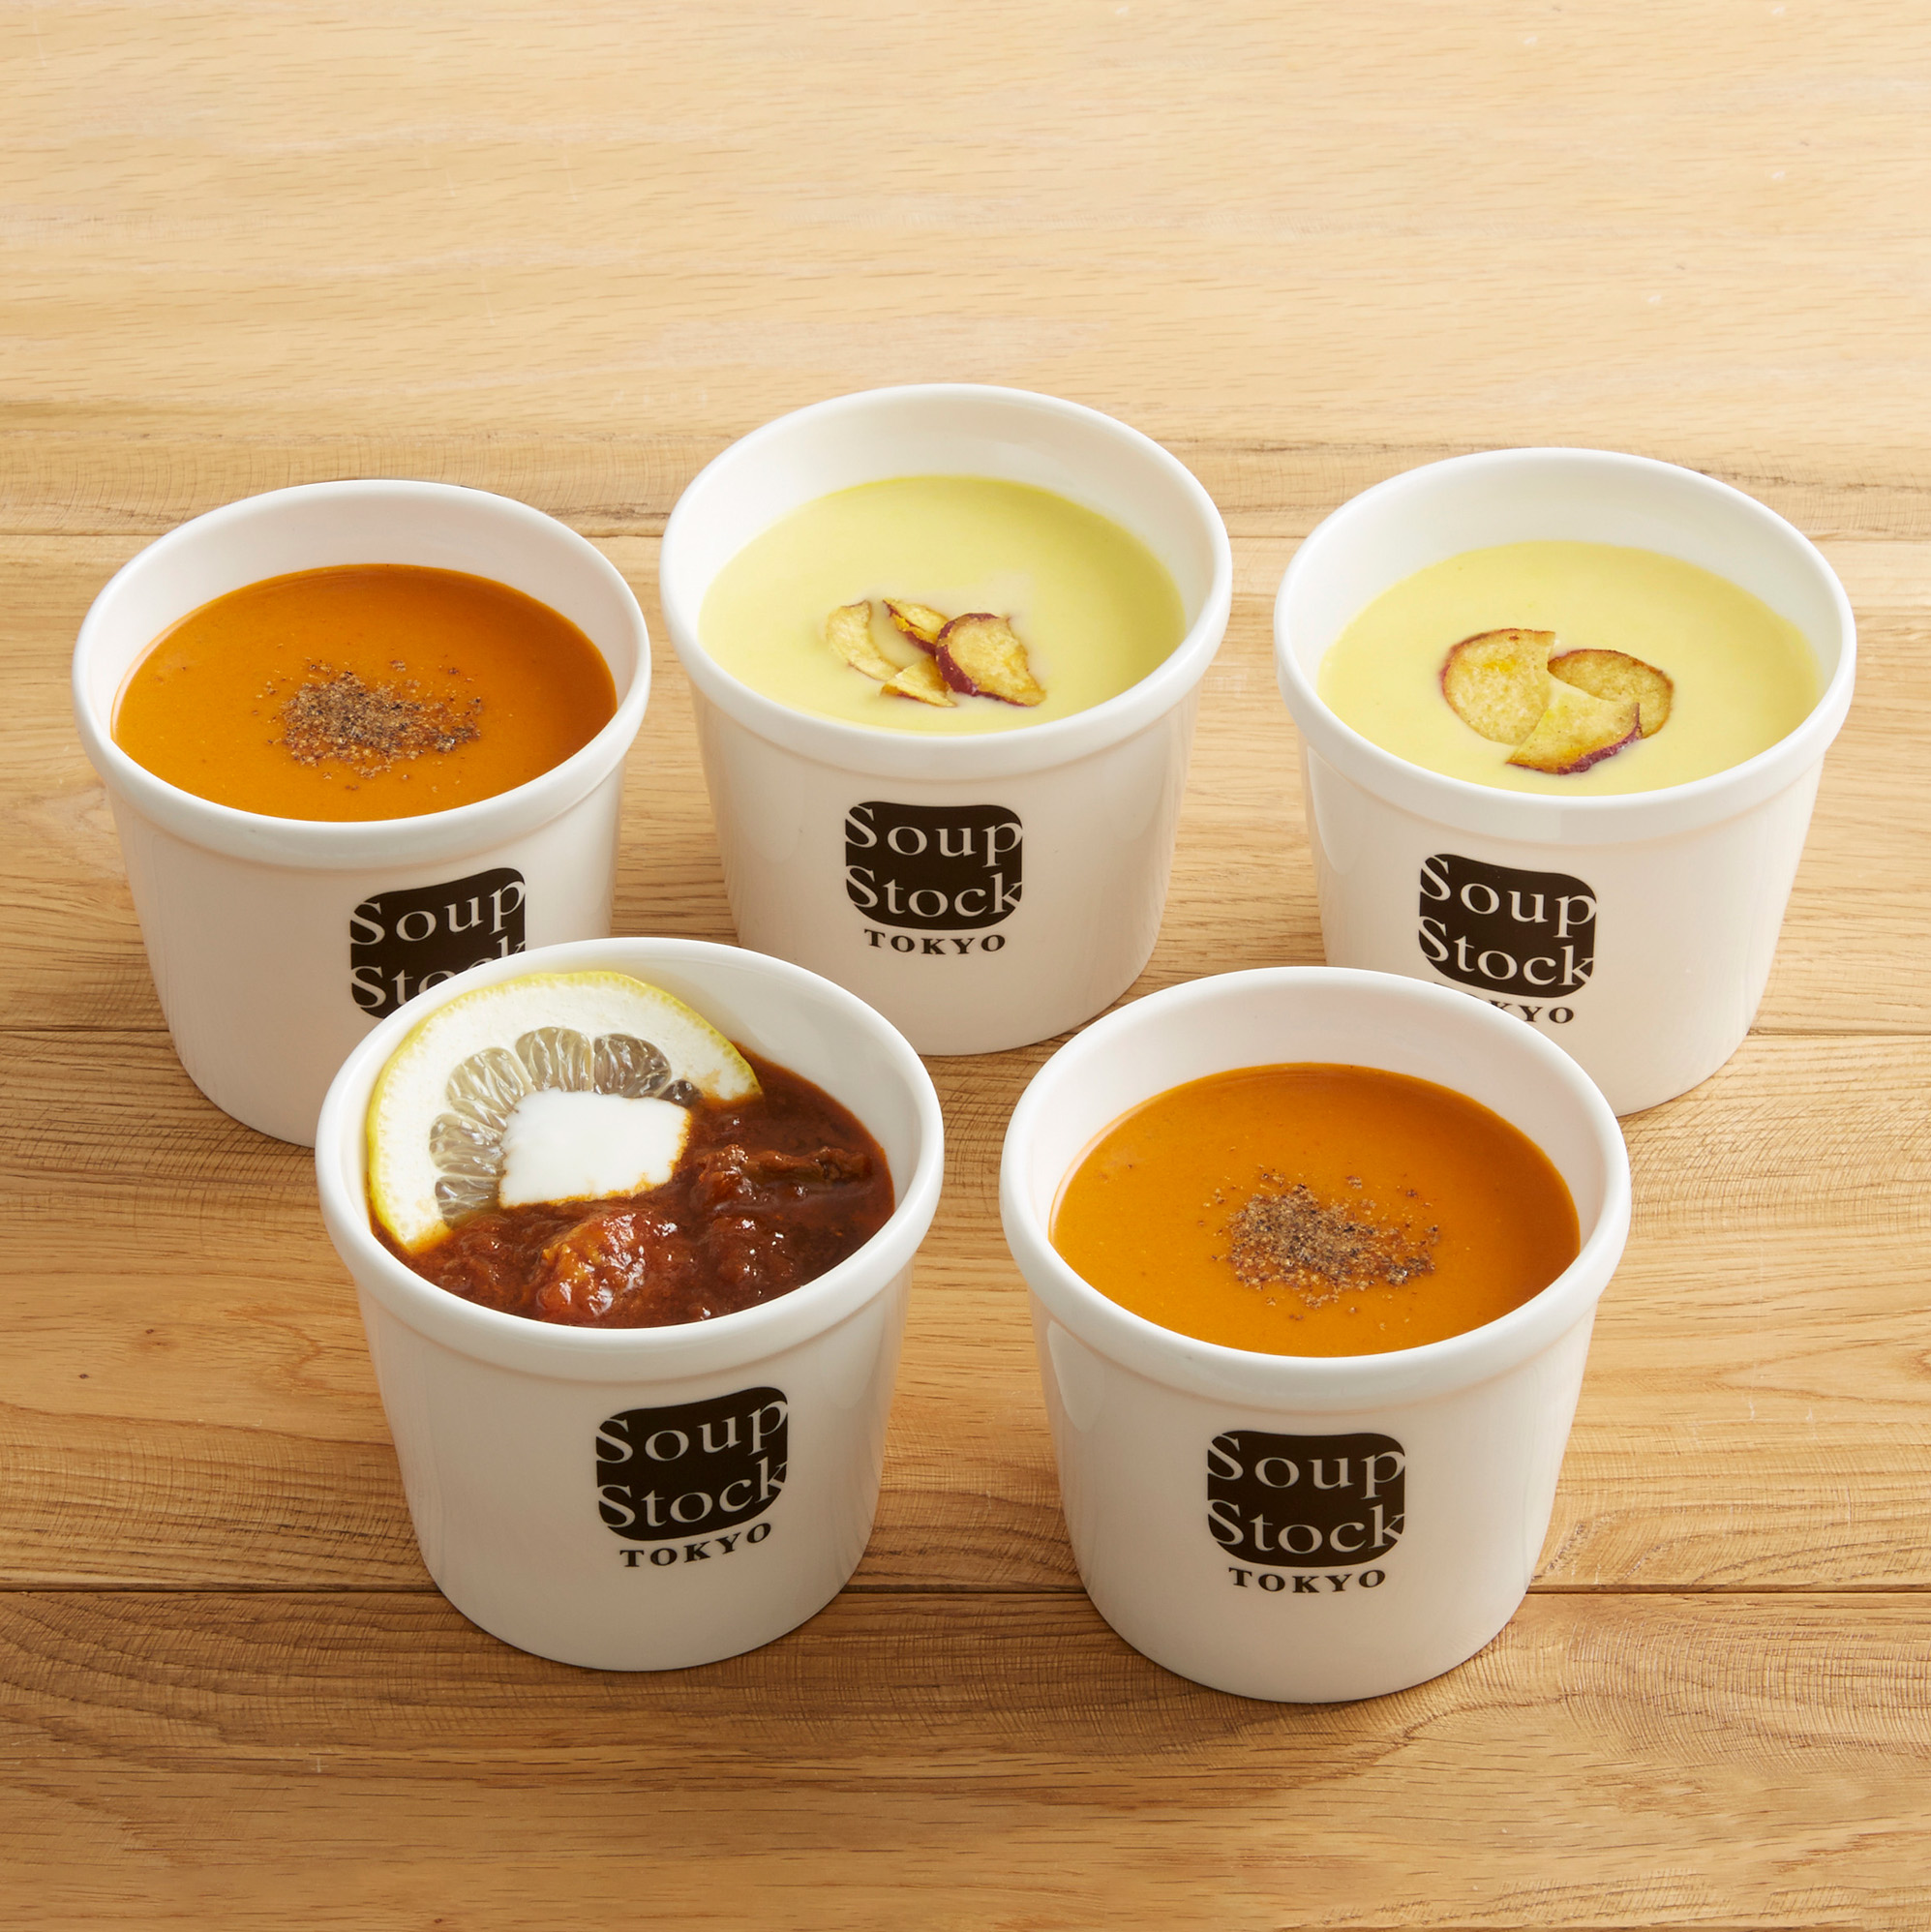 日本正規代理店品 スープストックトーキョー スープ 20セット ギフト まとめ買いに